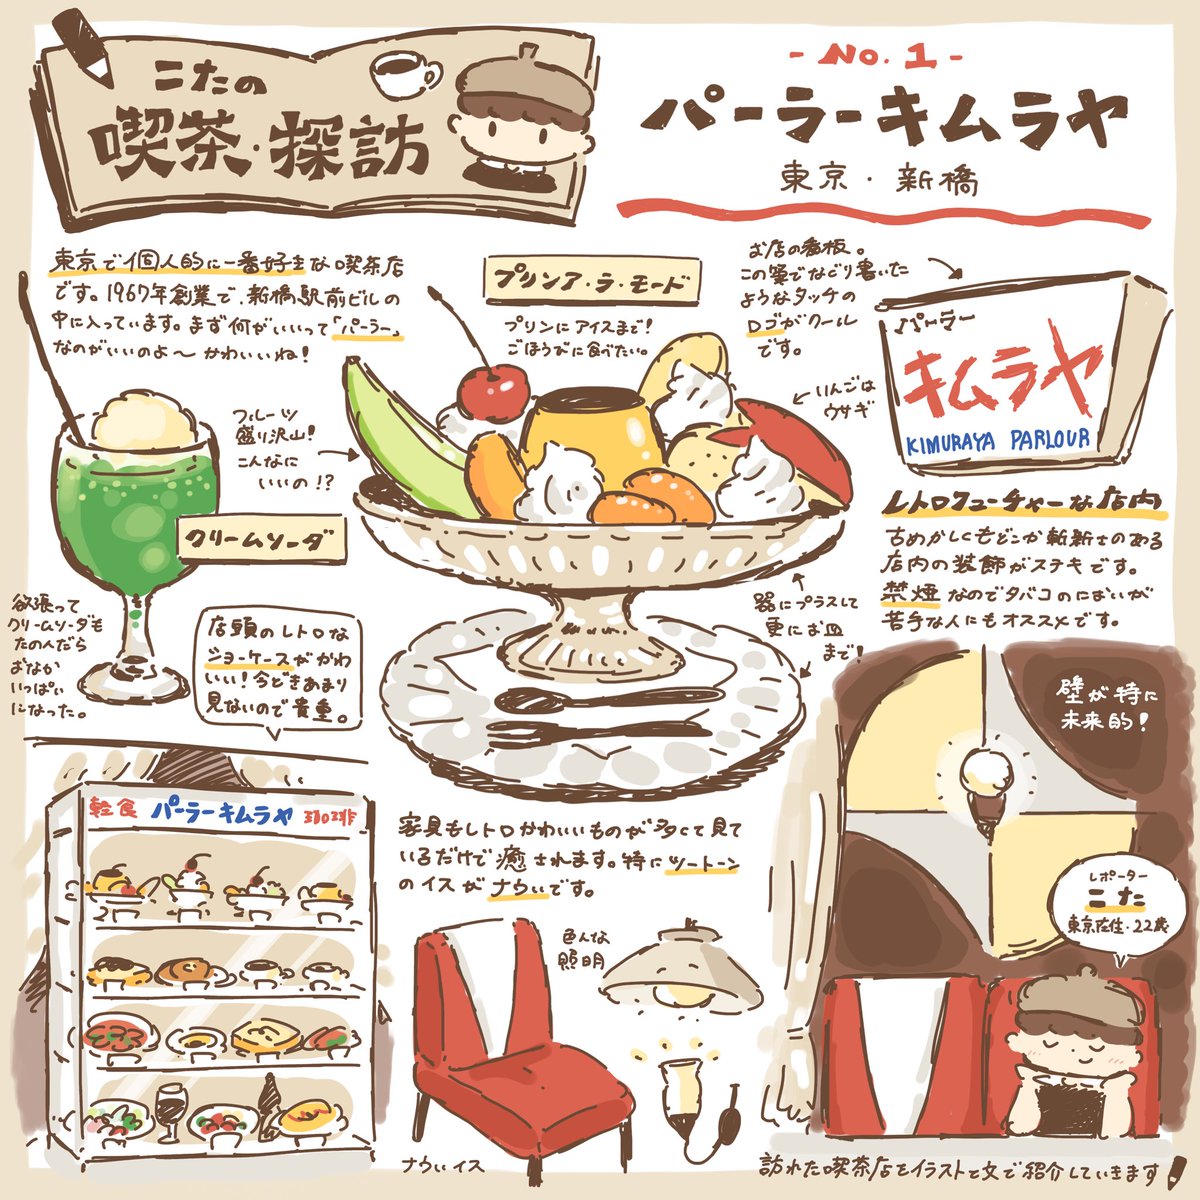 喫茶店を巡ってレポを描いていきます☕️
【パーラーキムラヤ】東京・新橋
#こたの喫茶探訪 